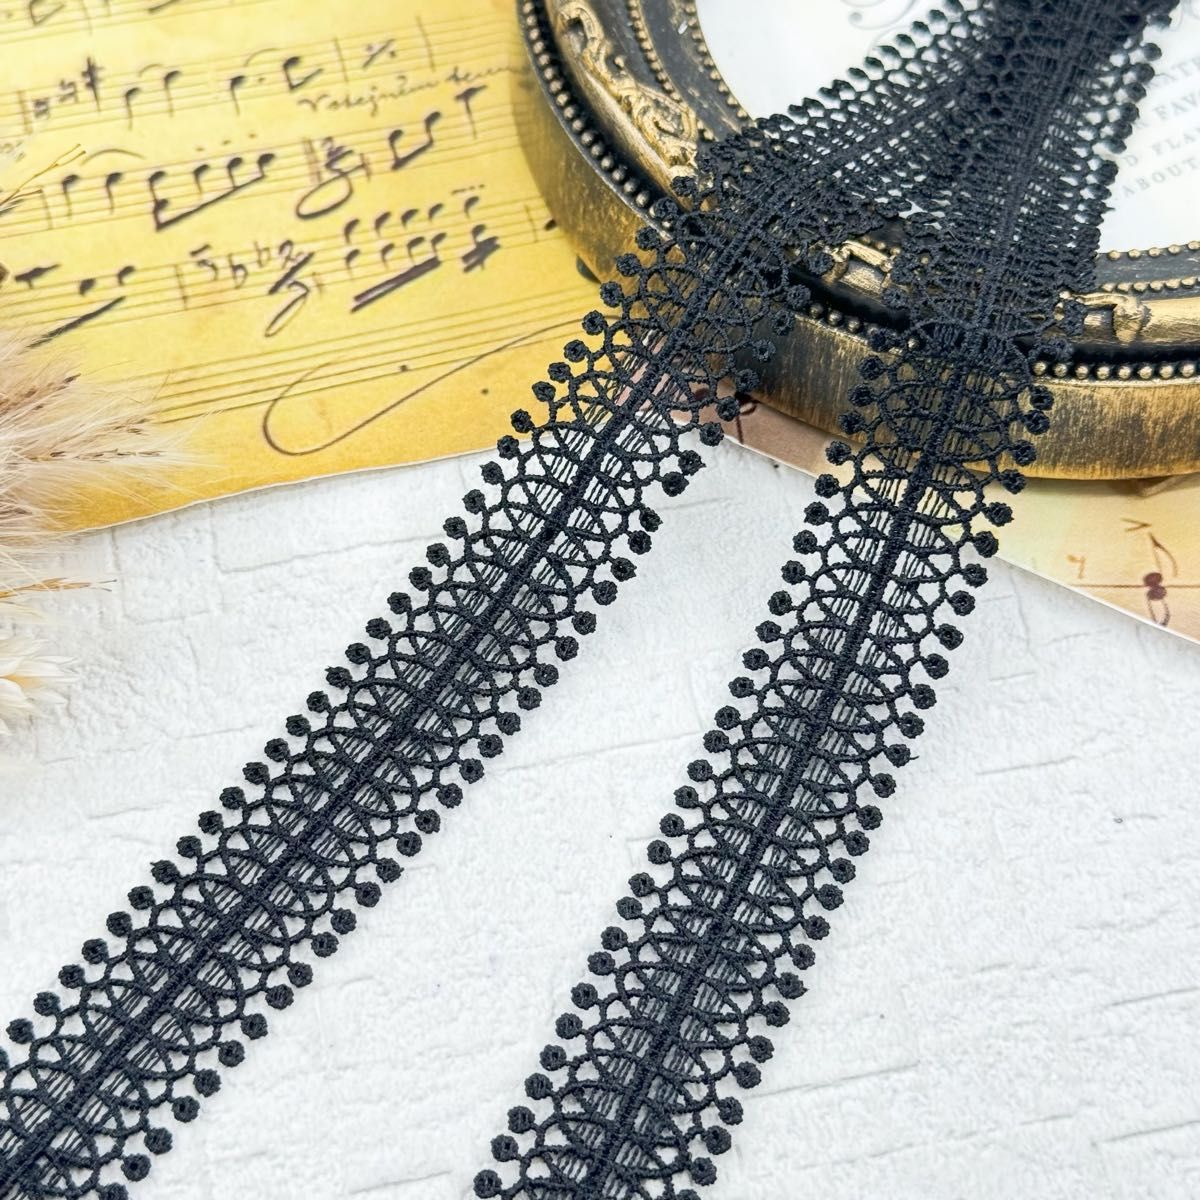 S481【12.5m】高品質ハシゴ刺繍ケミカルレース　飾りレースリボン　黒 